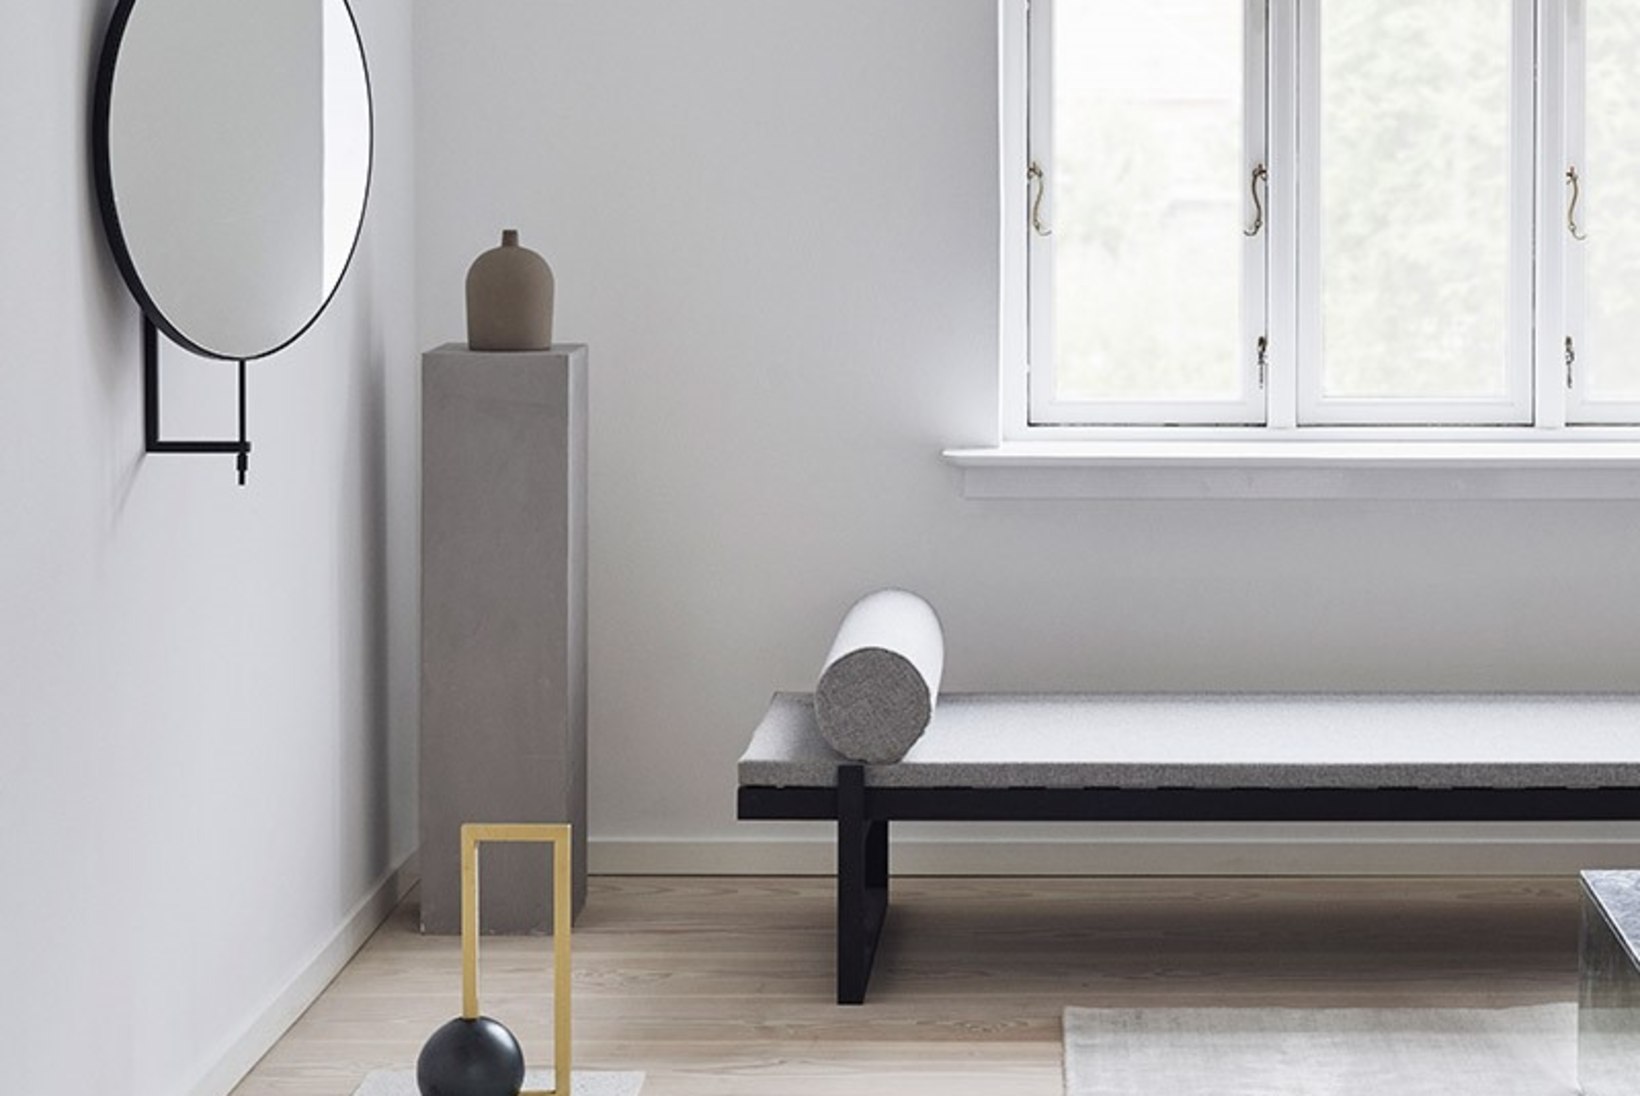 Taani disaineri Kristina Dami loodud pöörlev peegel võlub ennekõike funktsionaalsusega